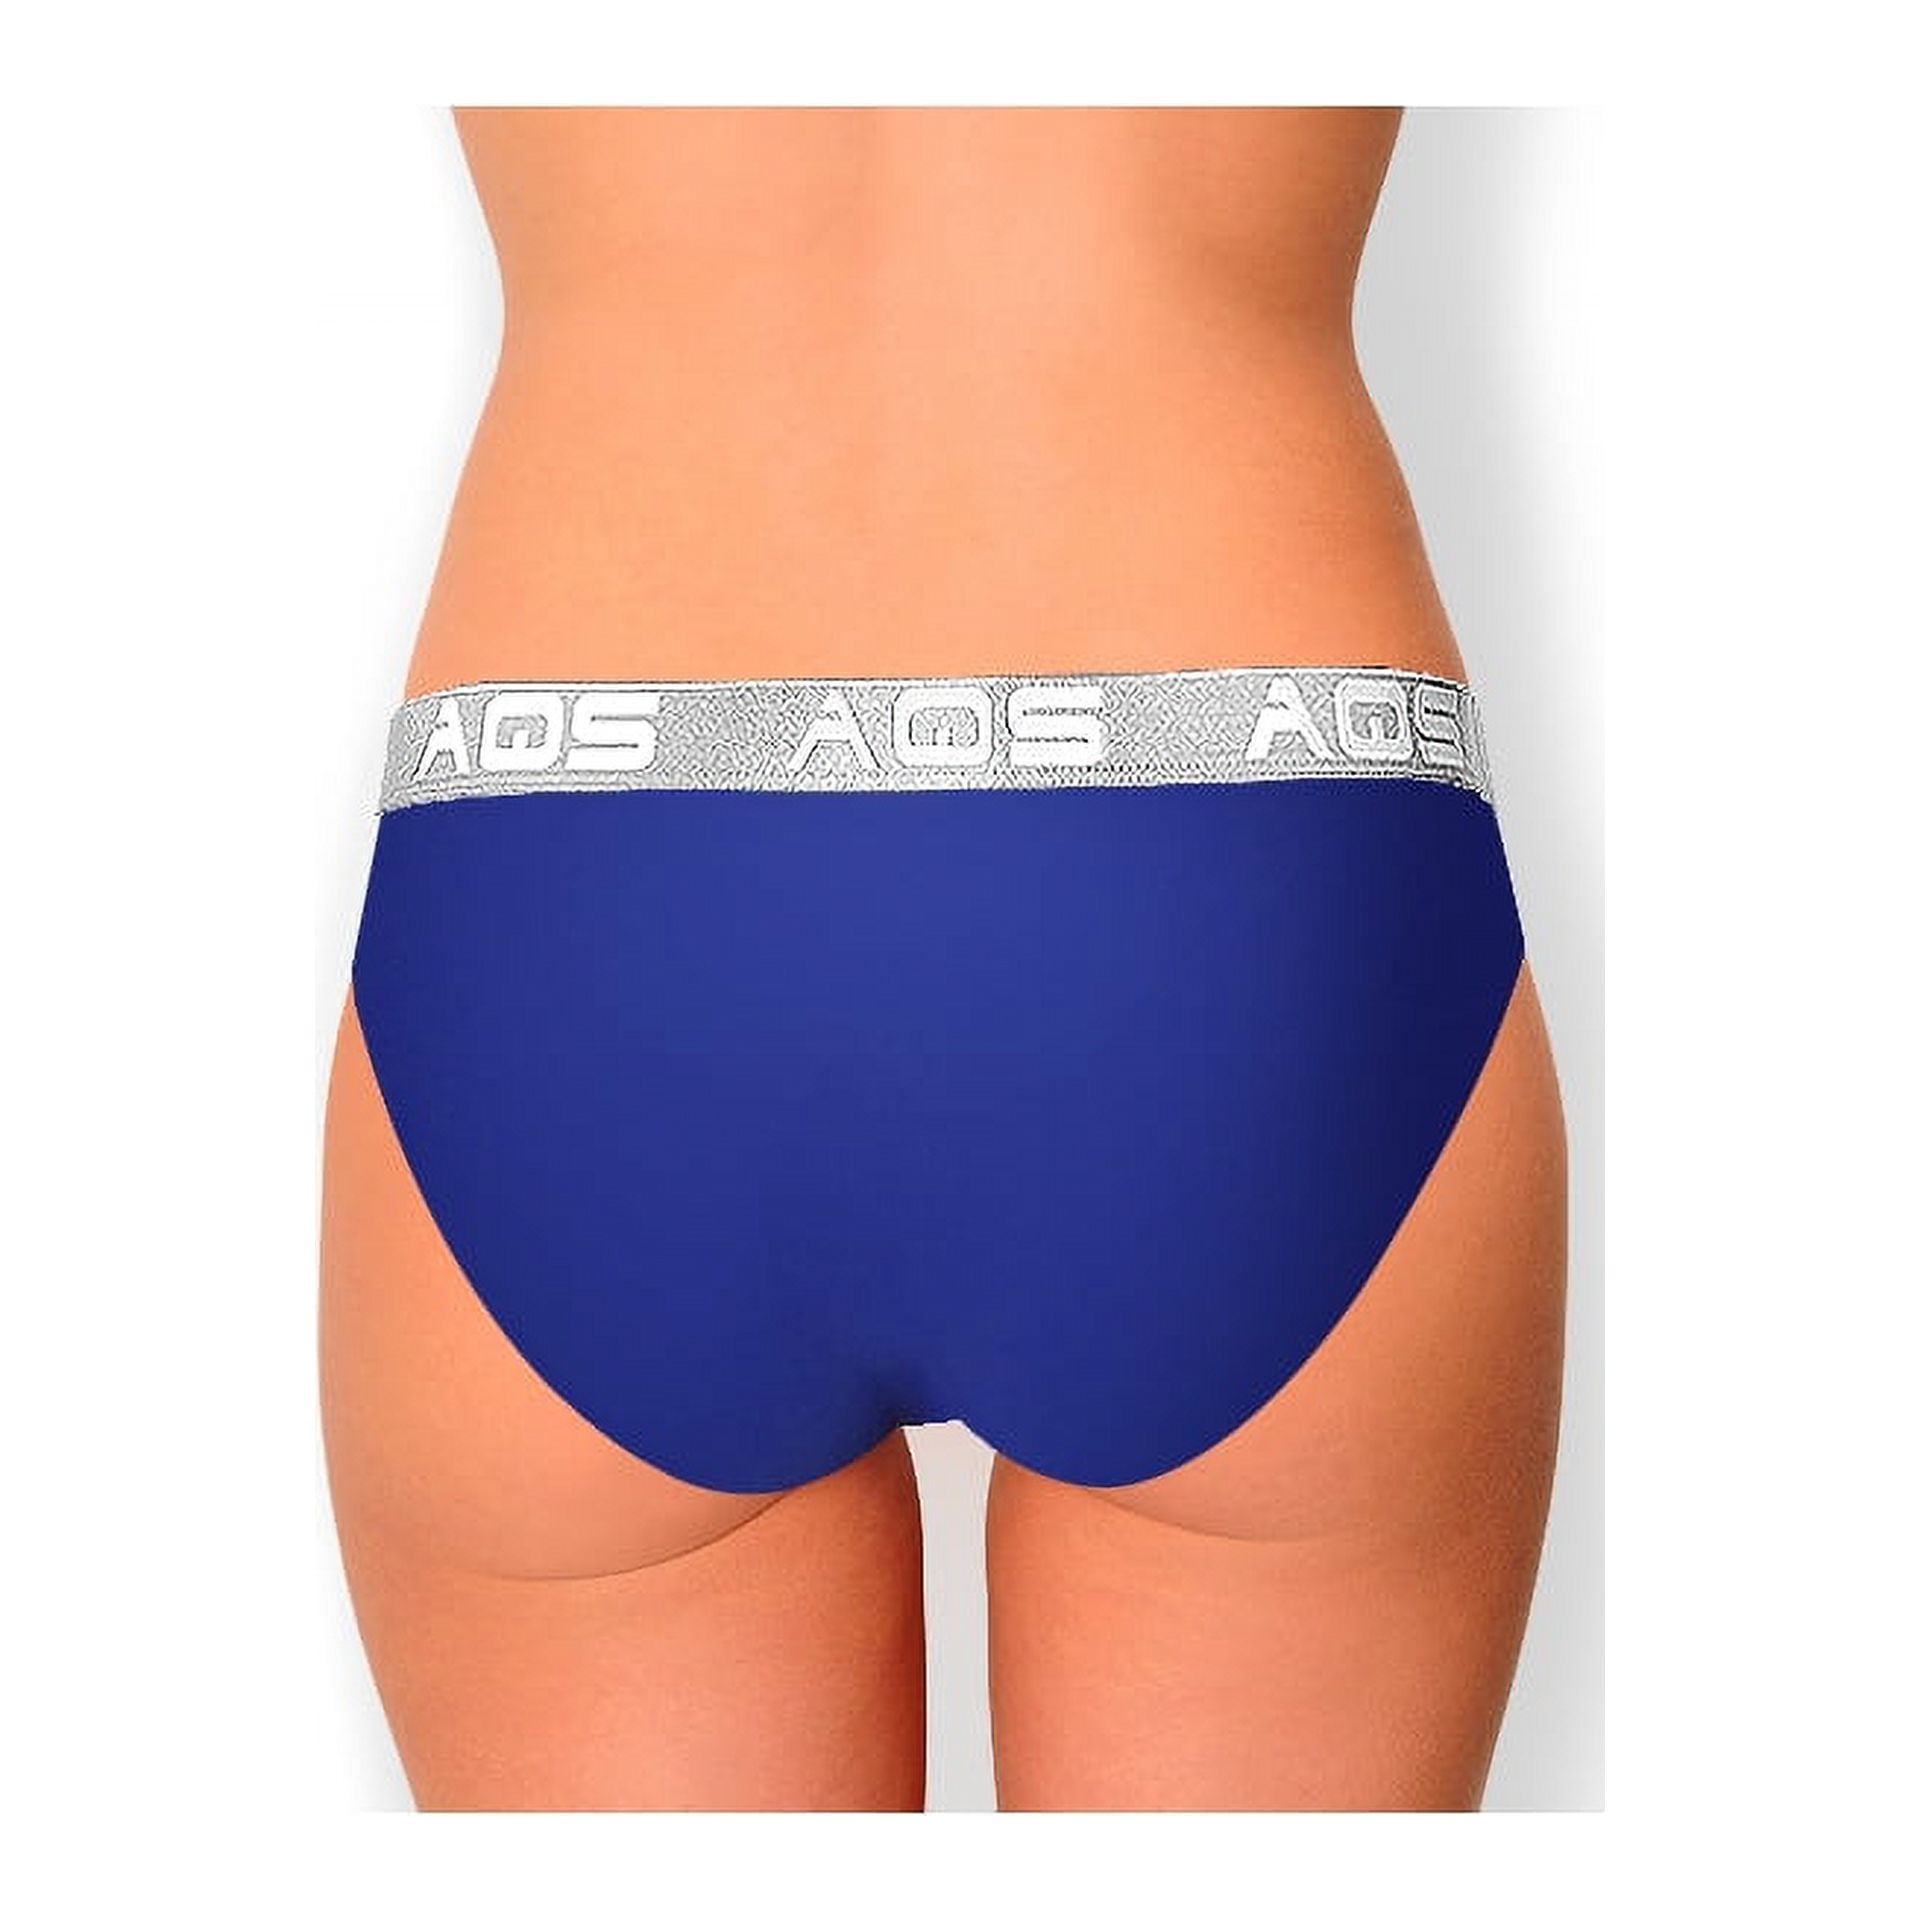 AQS Ladies Dark Blue Cotton Bikini Underwear - 3 Pack 